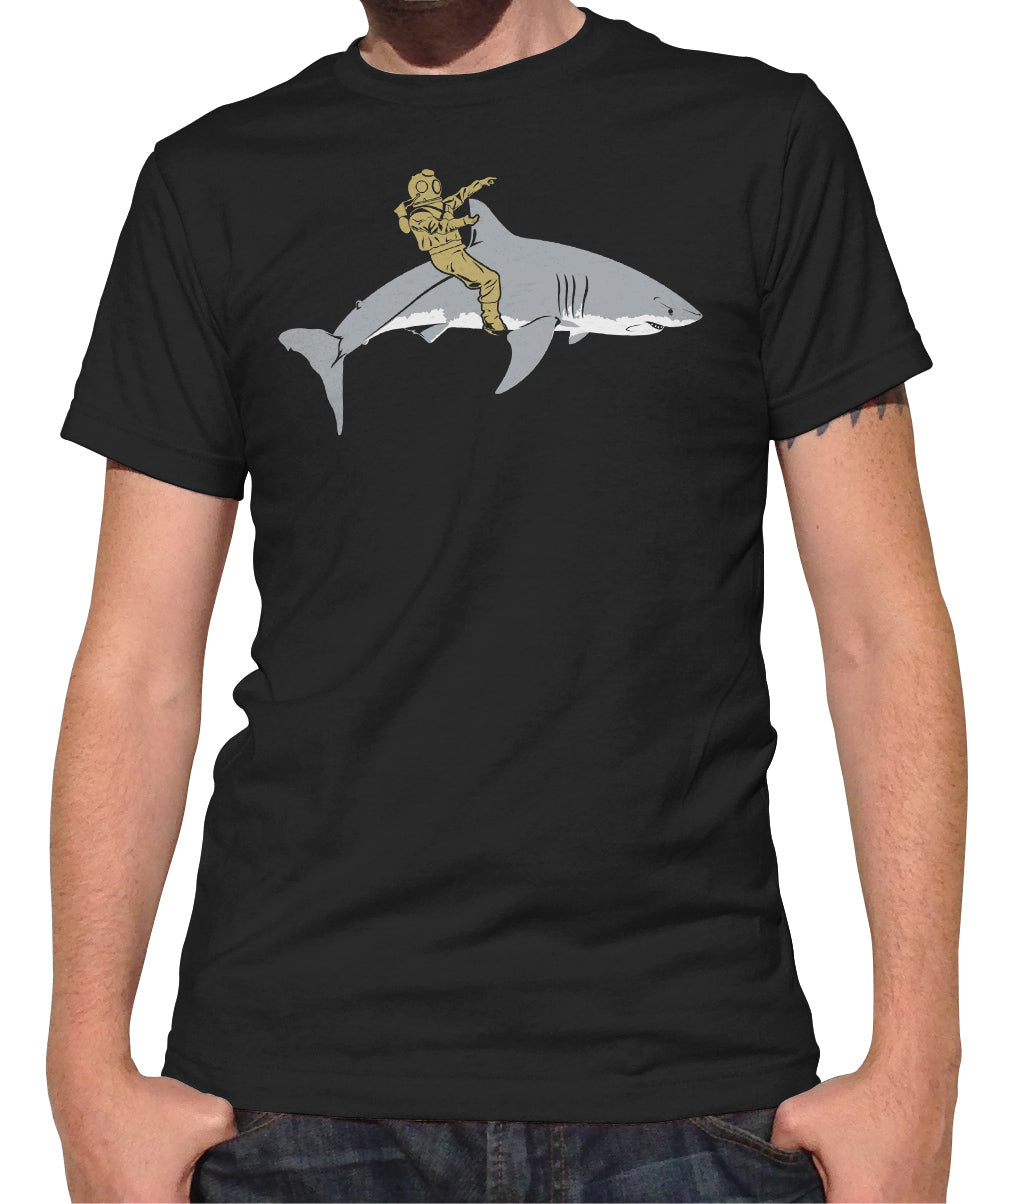 Men's Diver Riding a Shark T-Shirt - By Ex-Boyfriend